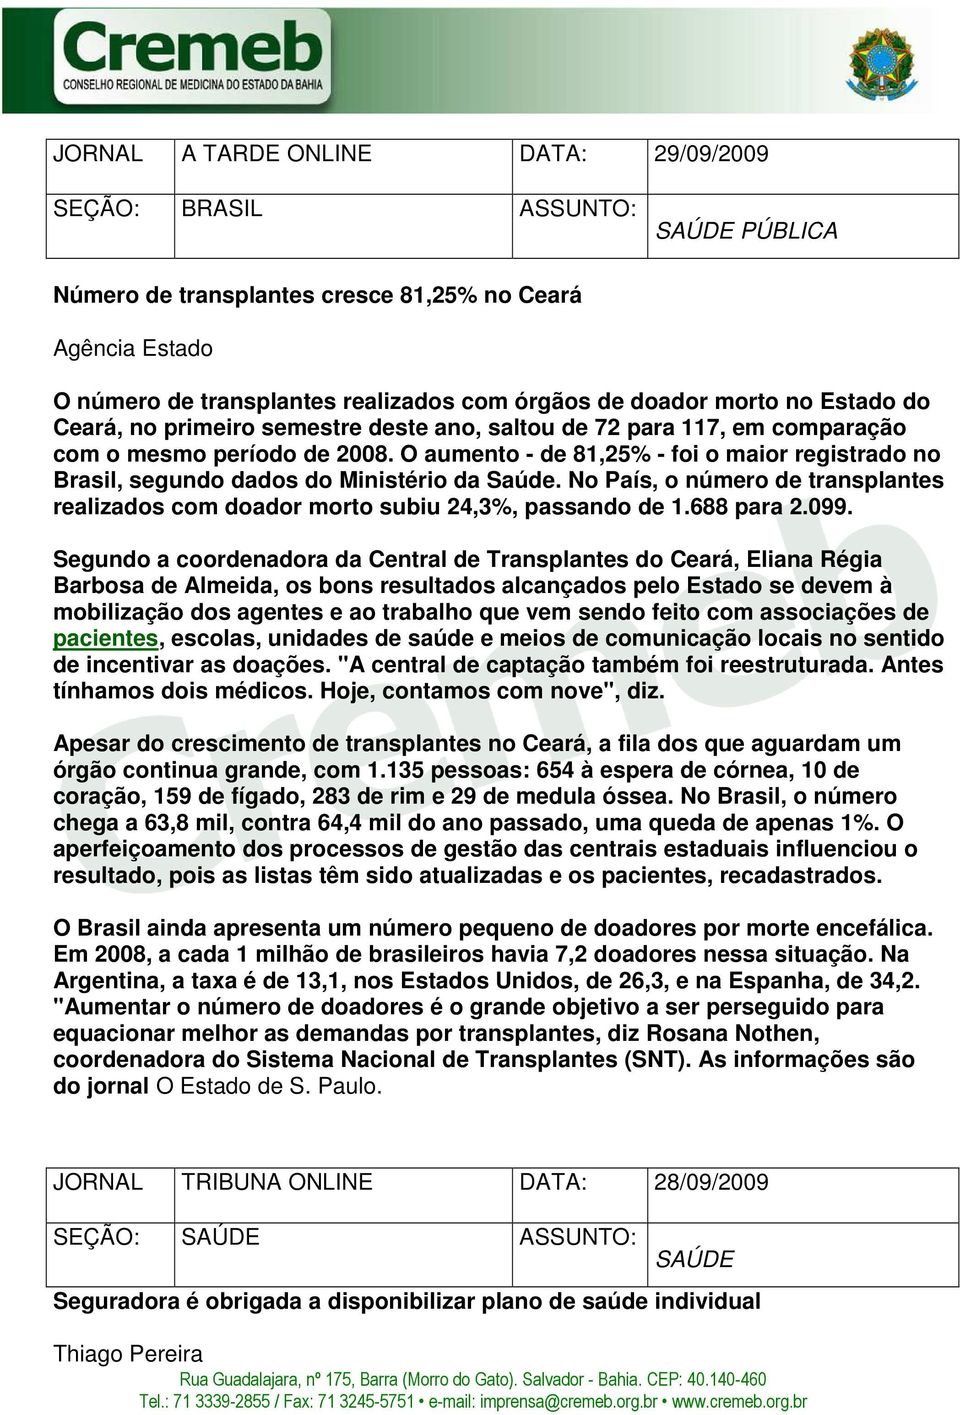 O aumento - de 81,25% - foi o maior registrado no Brasil, segundo dados do Ministério da Saúde. No País, o número de transplantes realizados com doador morto subiu 24,3%, passando de 1.688 para 2.099.